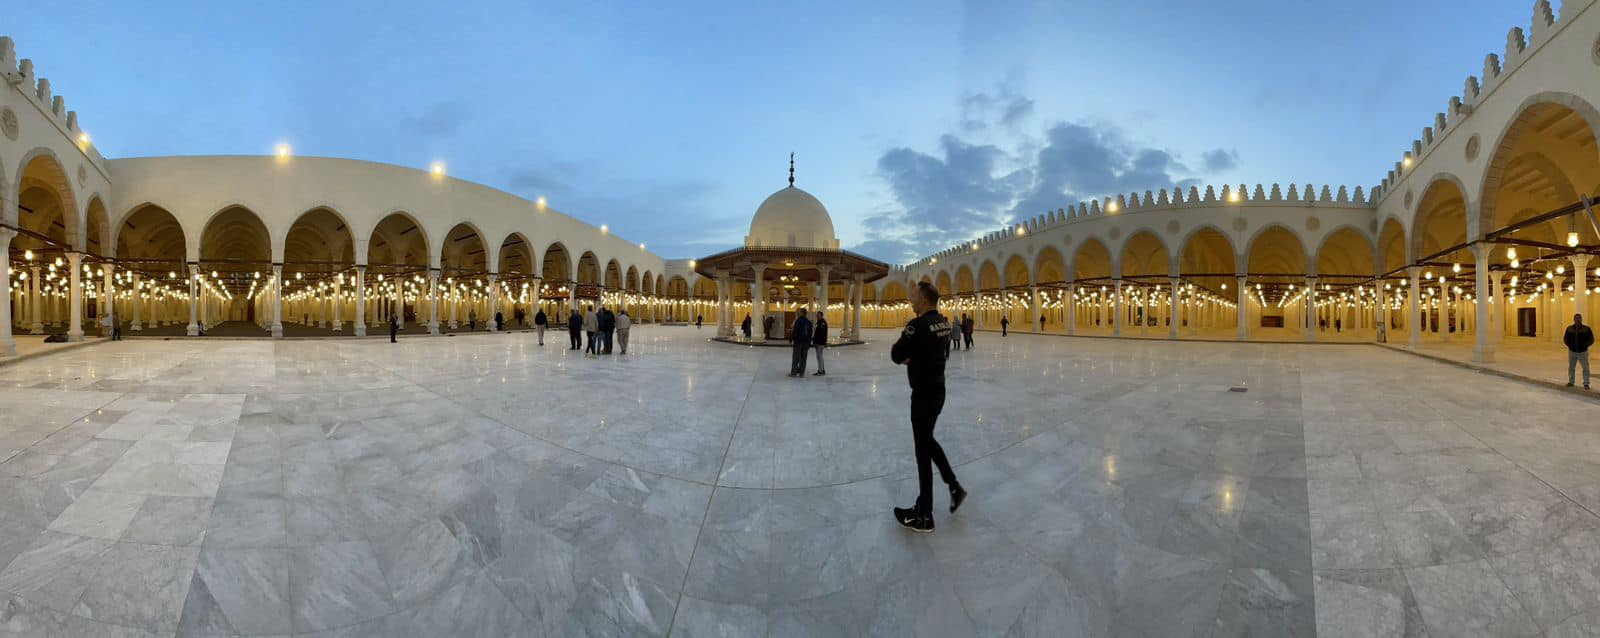 صور .. وزير الإسكان: مسجد عمرو بن العاص يستقبل رمضان في أبهى صورة بعد تطويره